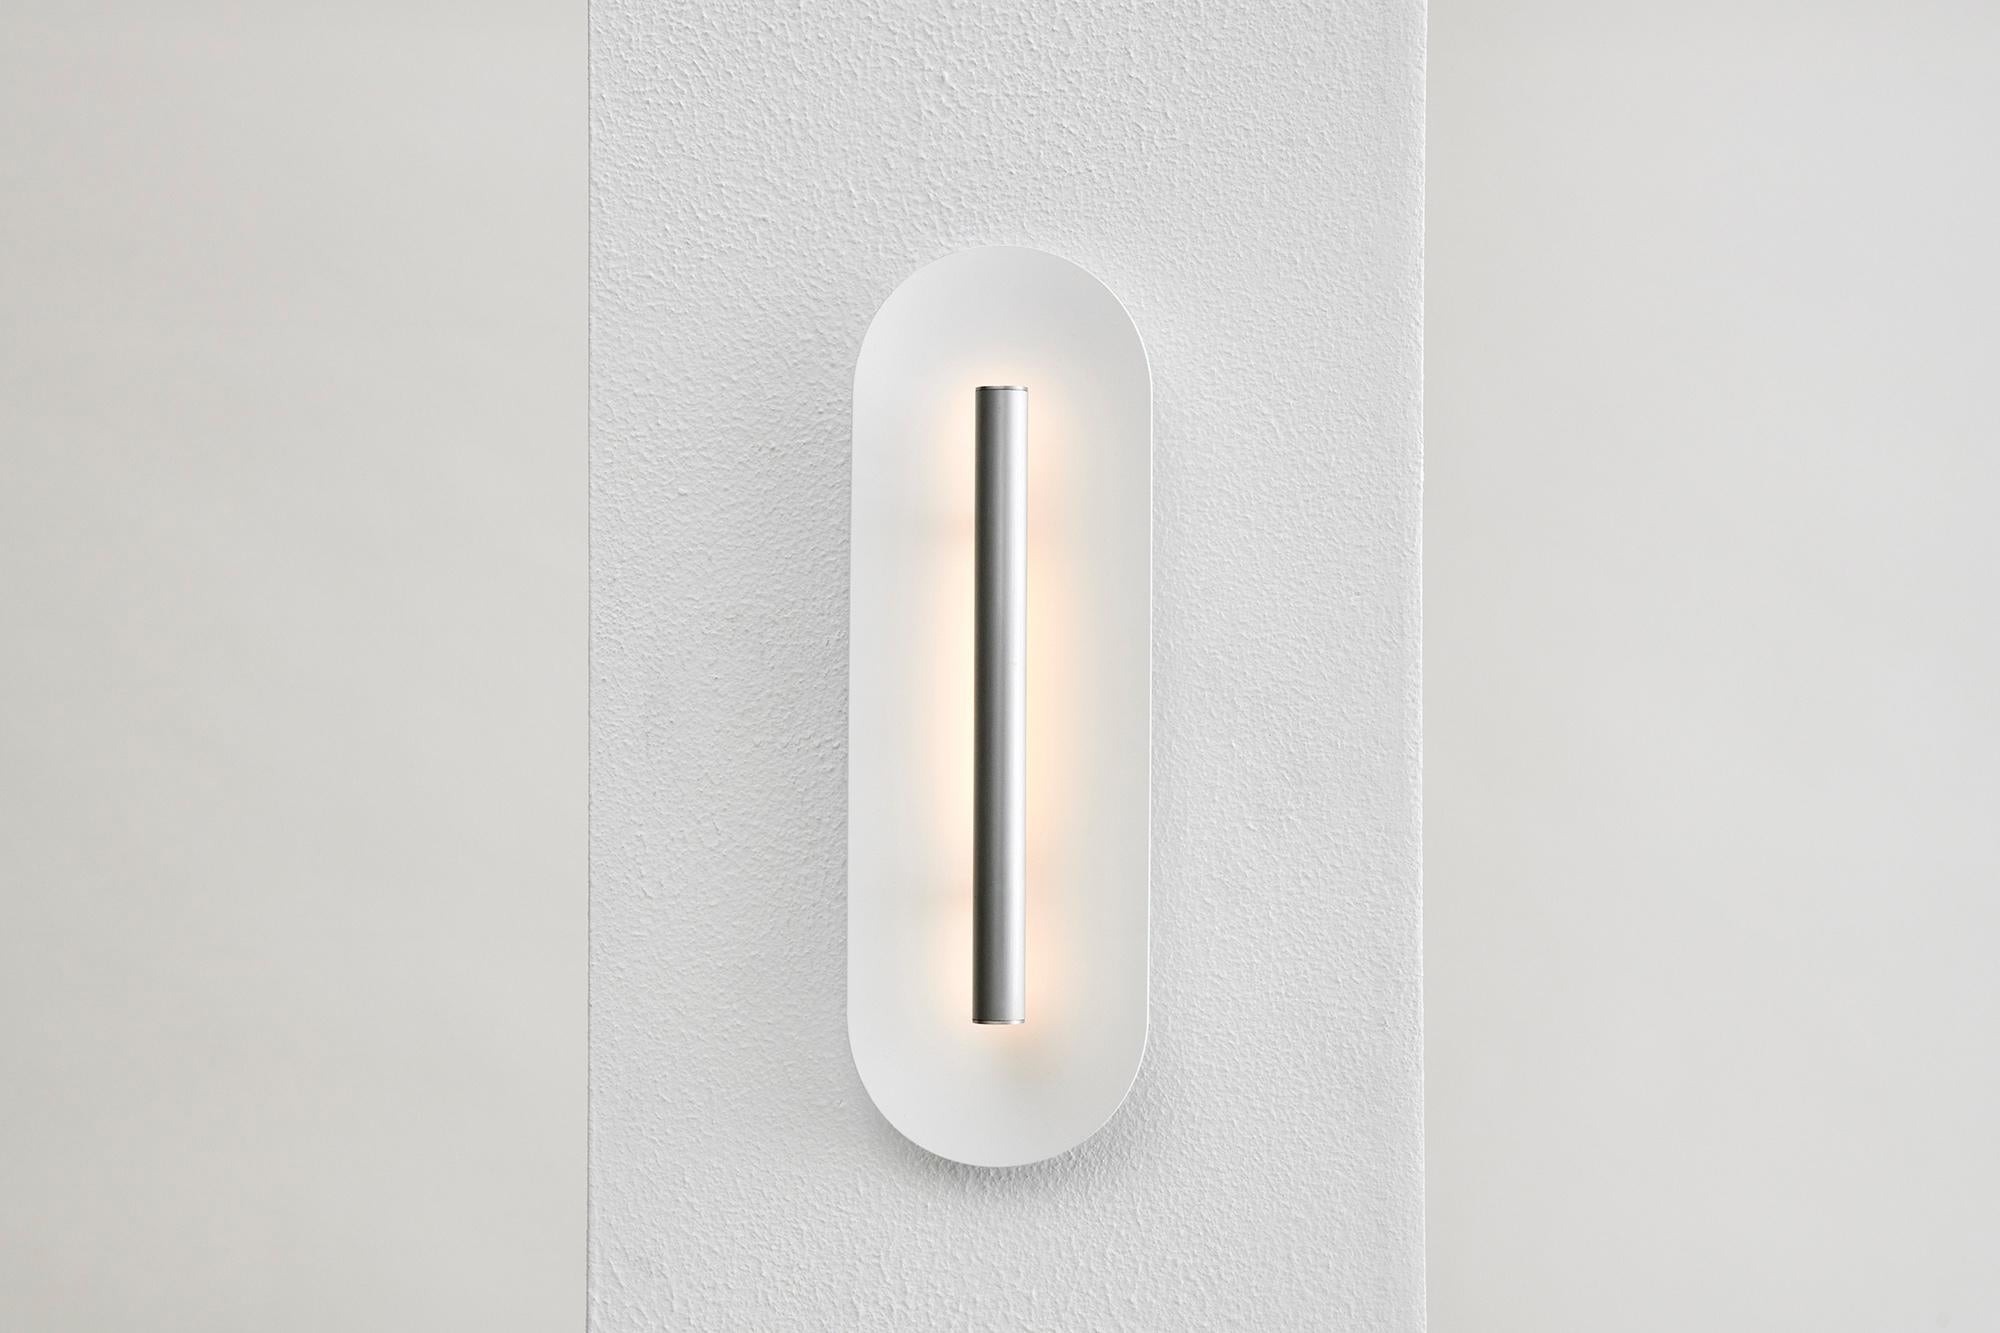 La puissante LED se reflète sur une coupelle délicatement incurvée, accentuant une pièce avec une douce lumière indirecte.
Le réflecteur en aluminium texturé, blanc mat, peut être assorti à notre gamme d'options de finition. 
Deux tailles sont